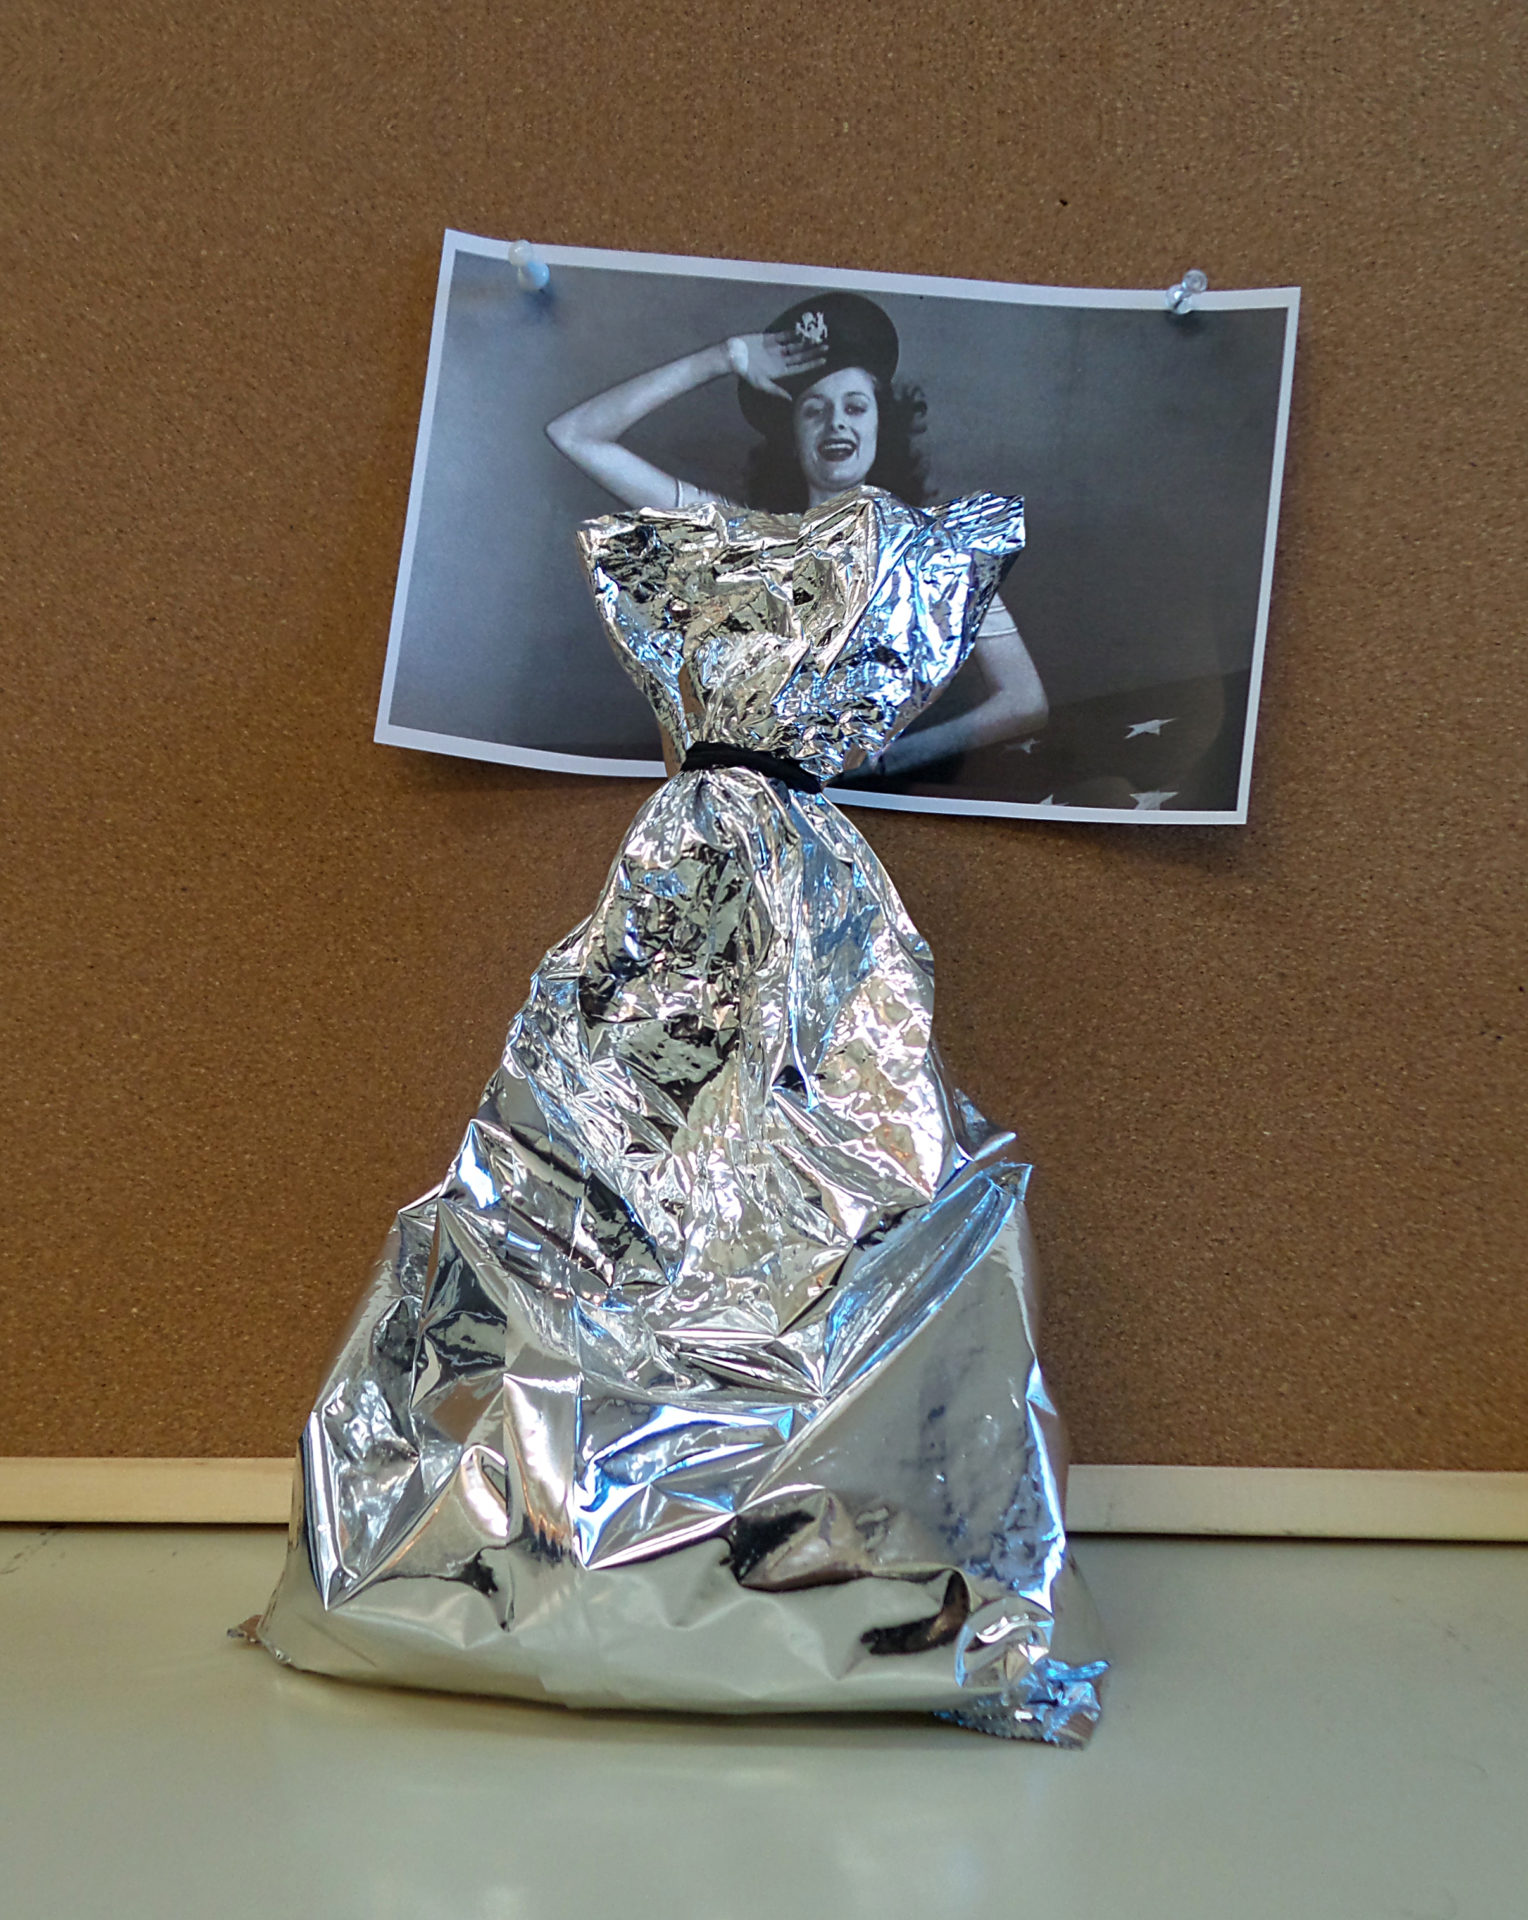 Sachet en aluminium plié formant une robe sur une photo de femme en noir et blanc